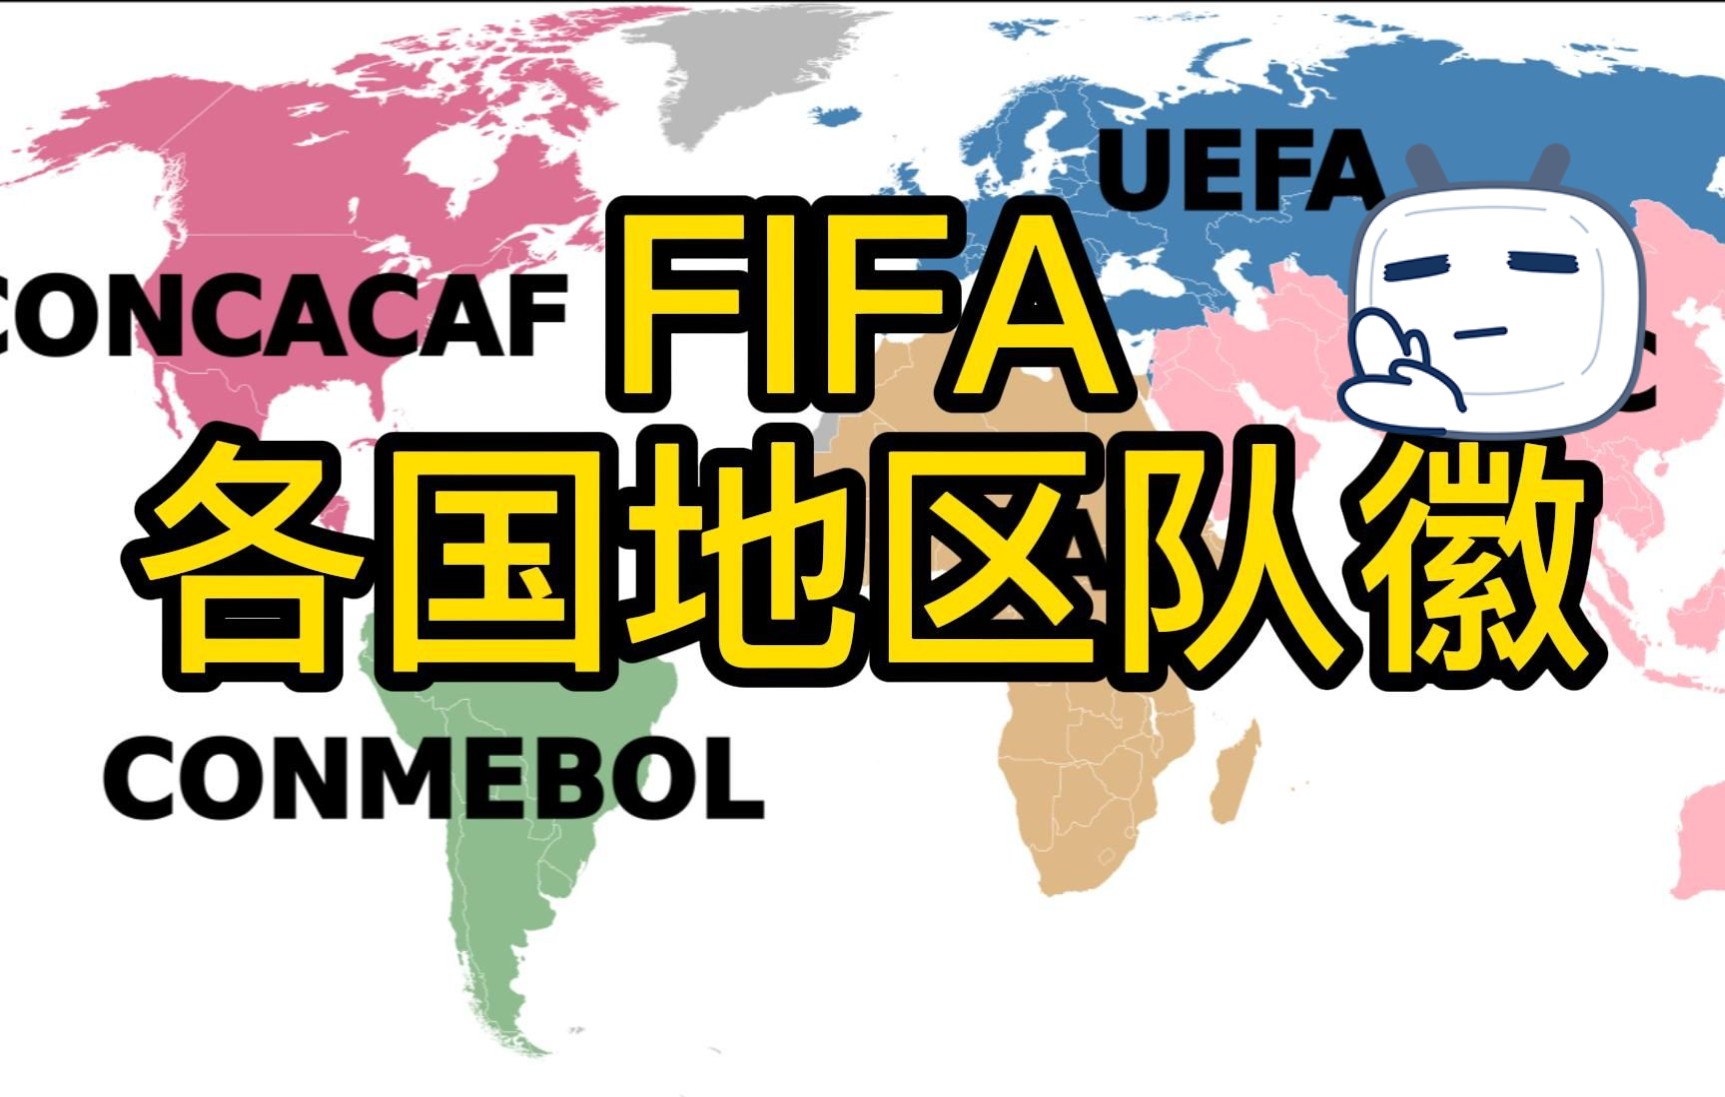 国际足球联合会的英文缩写是fifa(国际足球联合会的英文缩写为??)